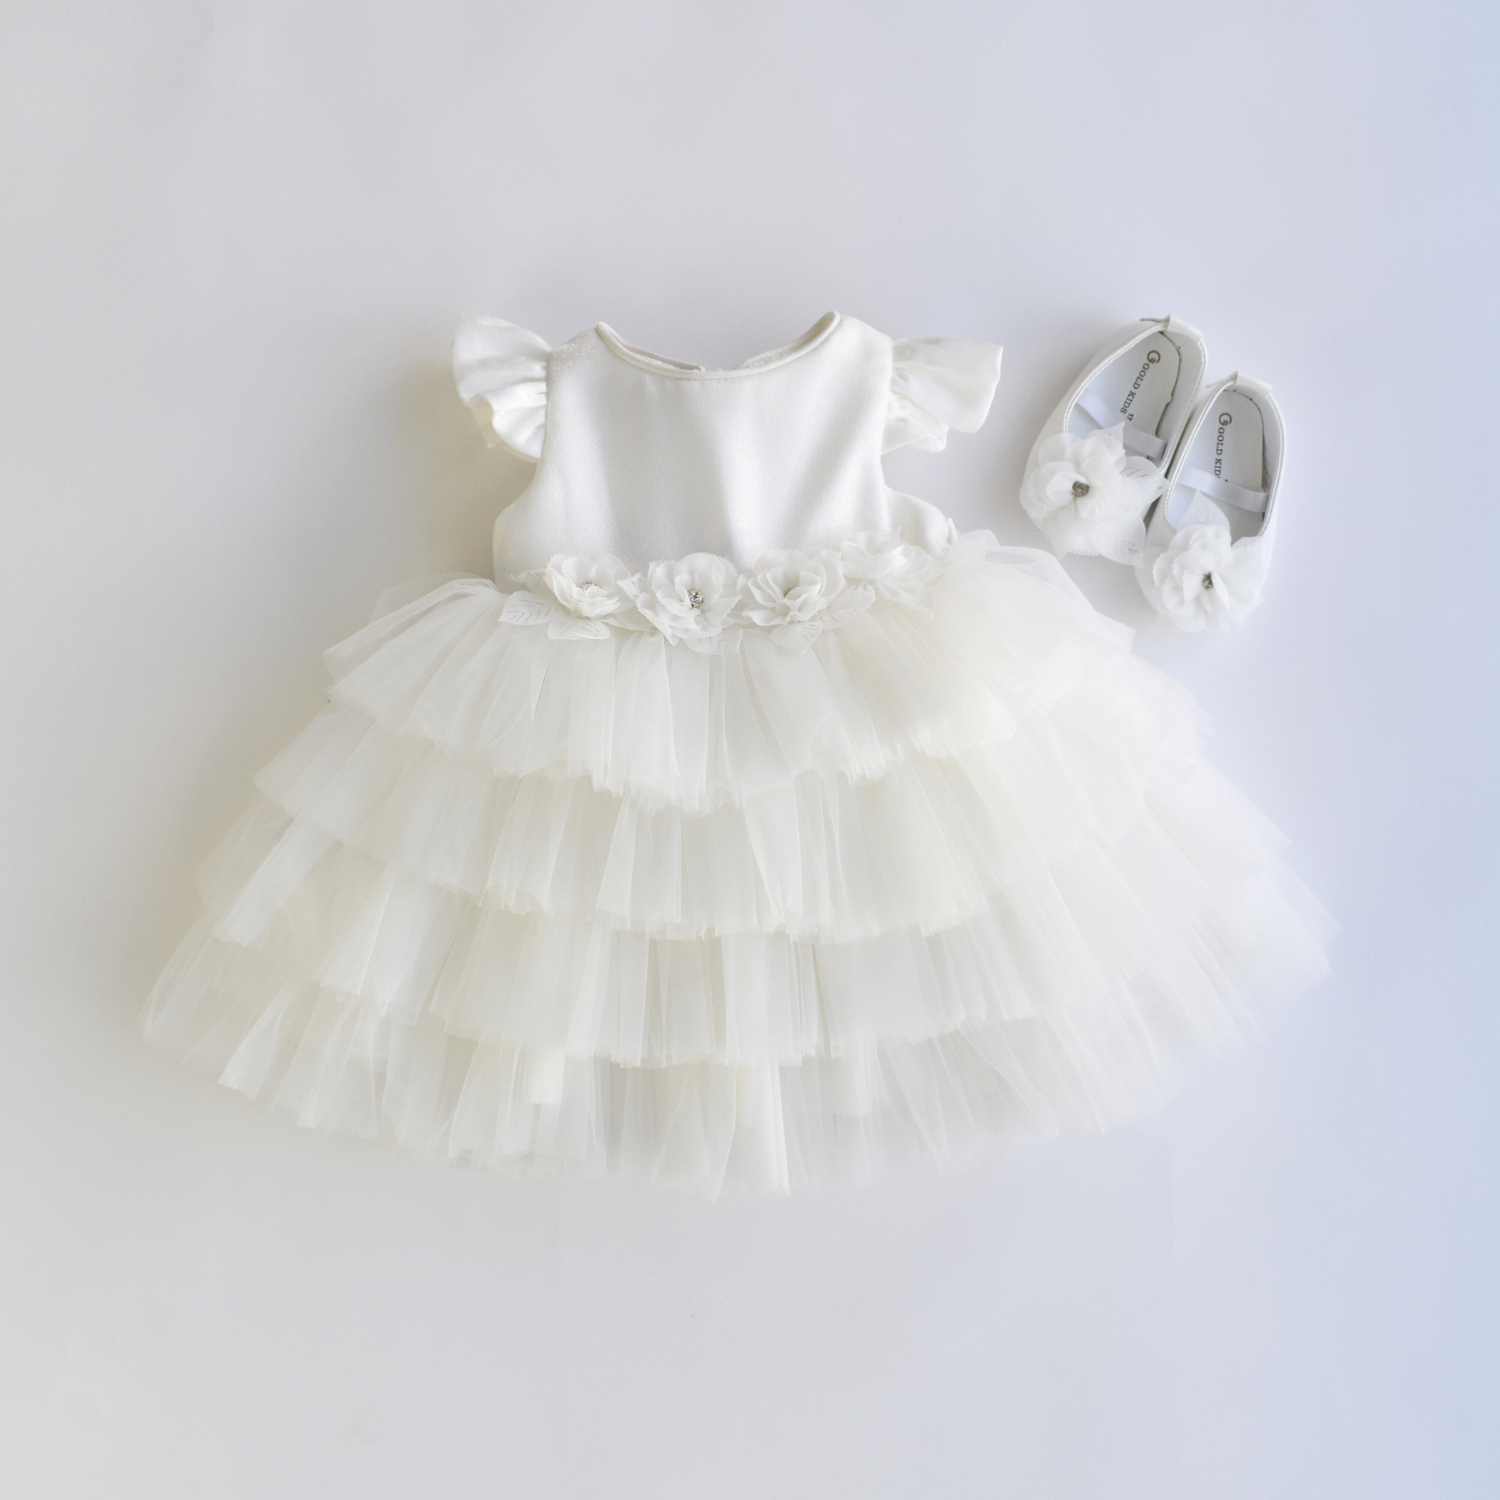 Baby Lola's Frilly Dress